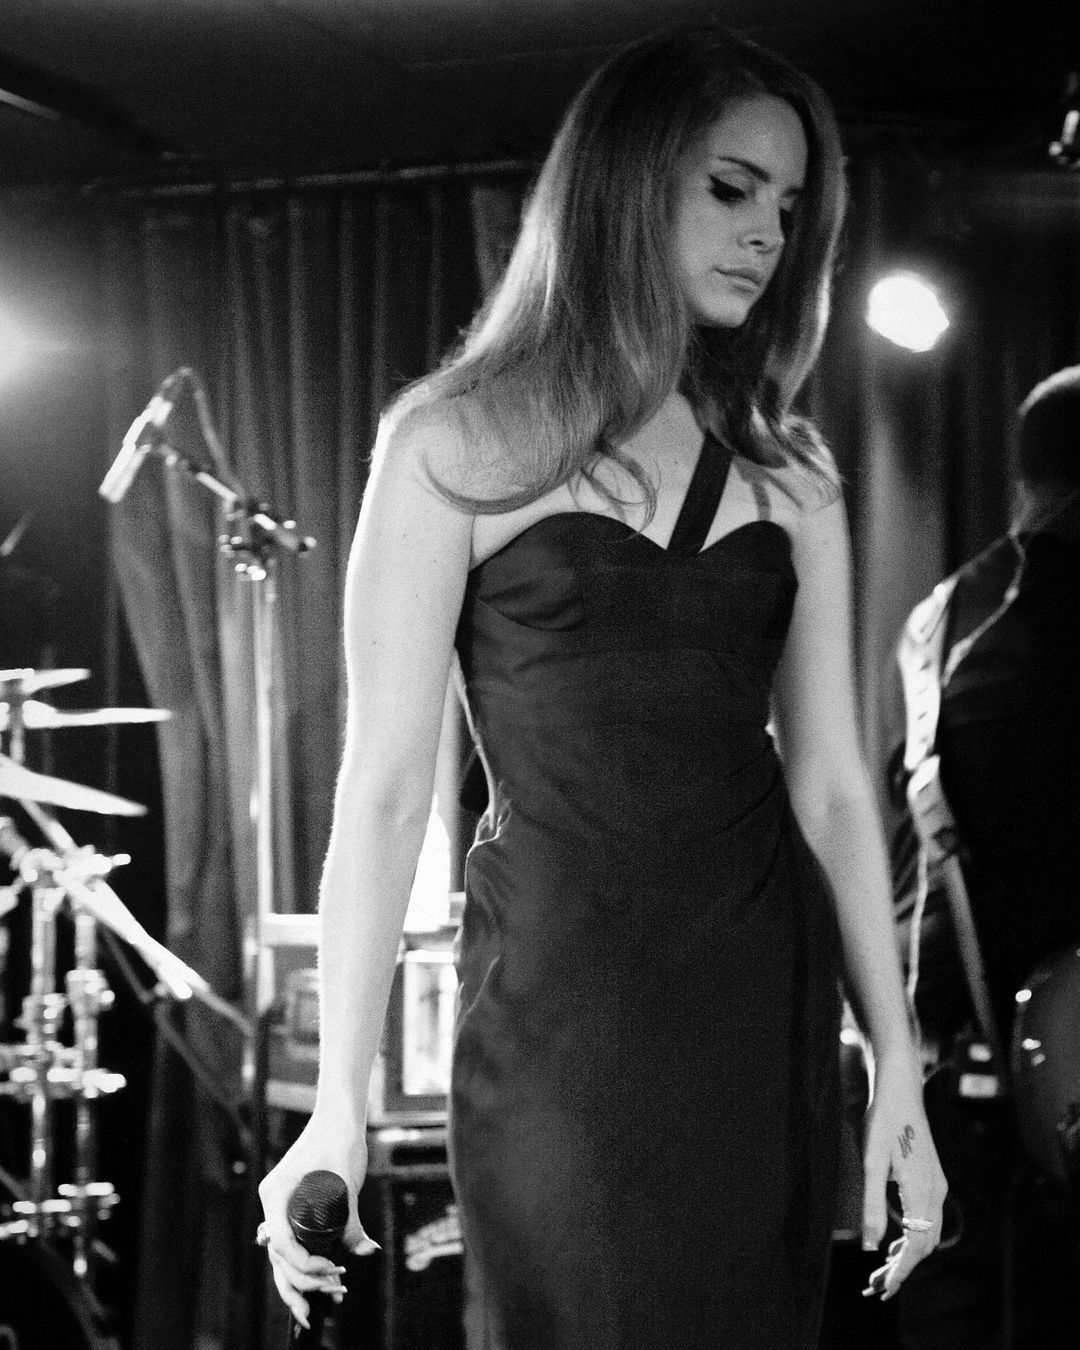 Singer Lana del Rey in Silencio